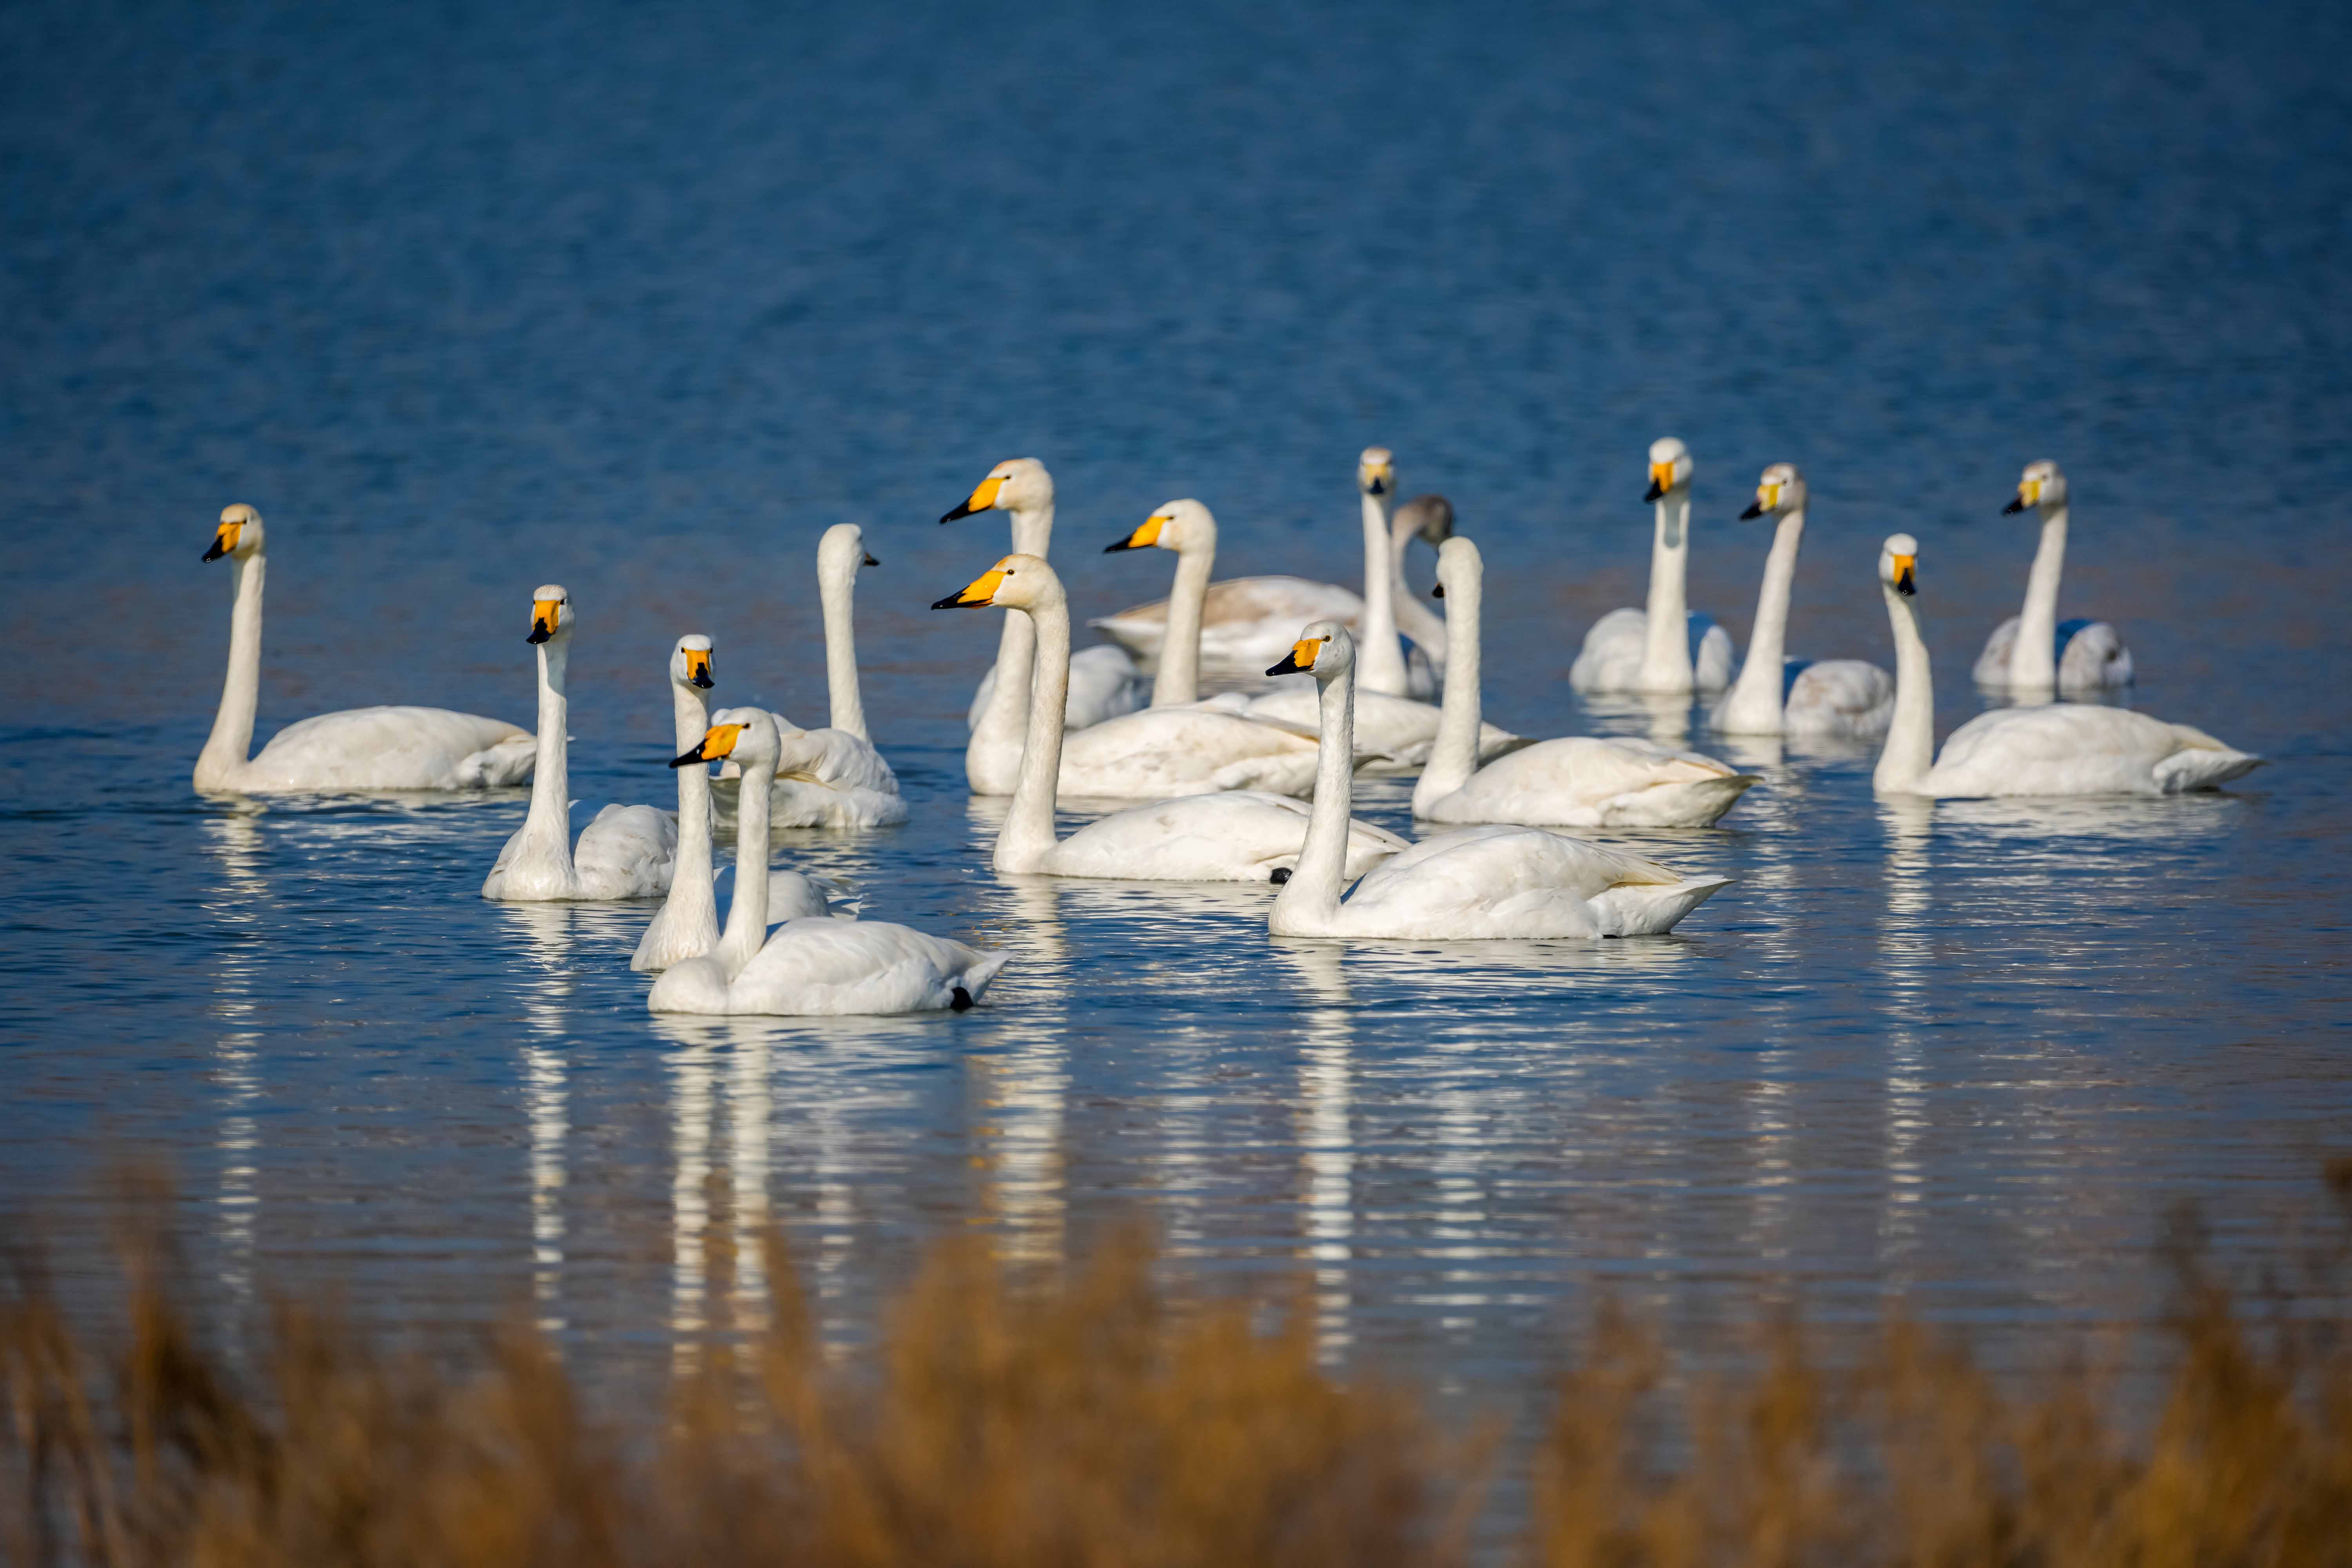 盐湖湿地天鹅舞翩跹它们时而嬉戏，时而觅食，时而飞翔，为盐湖带来勃勃生机。